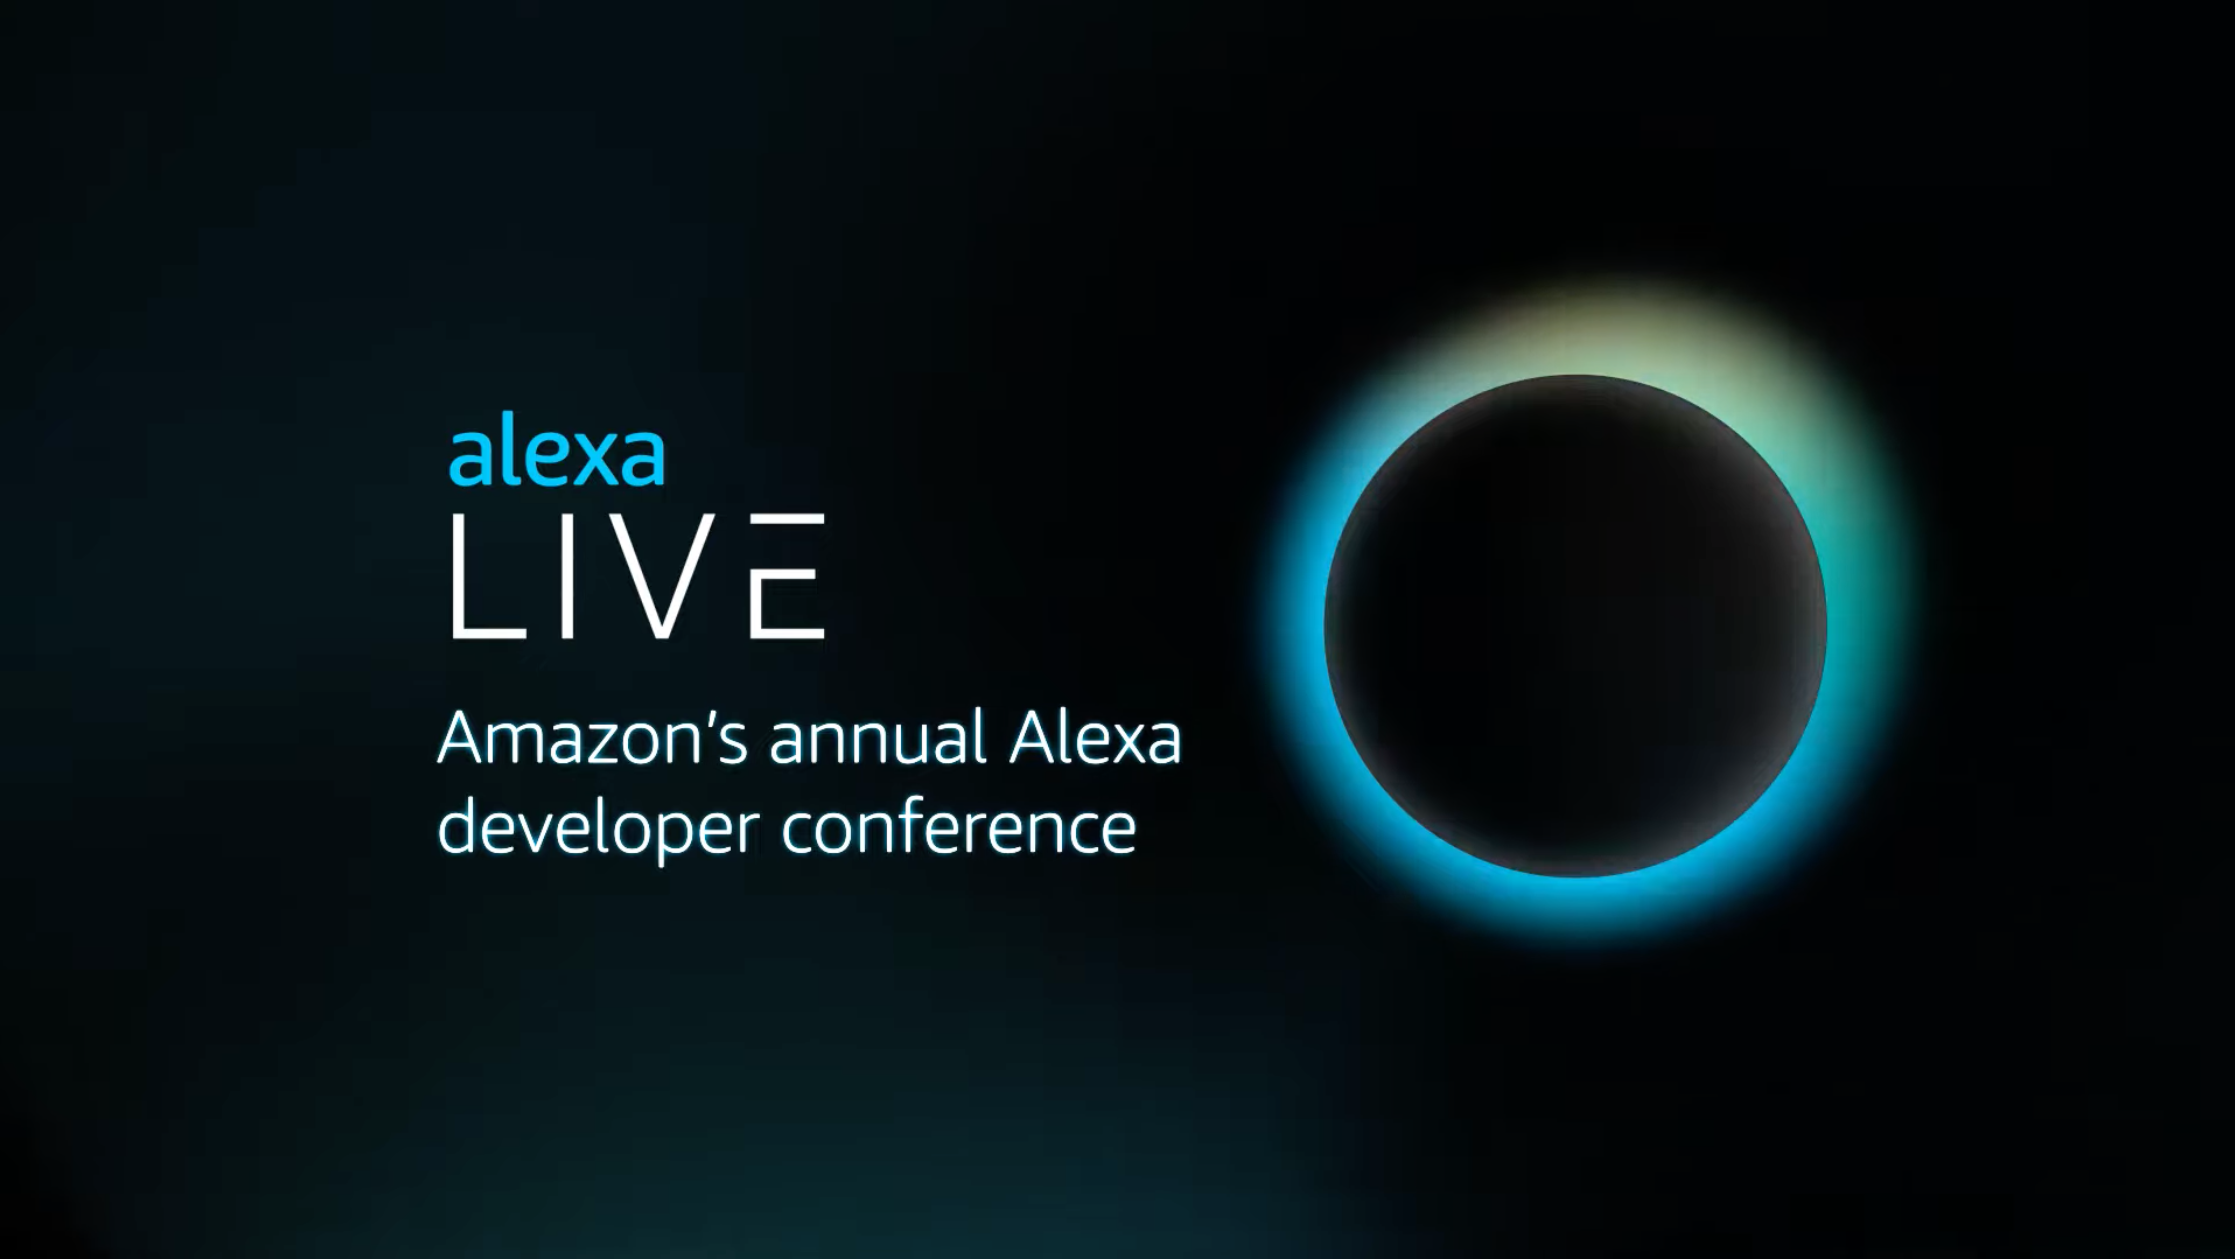 Alex Live. Amazon's annual Alexa developer conference.